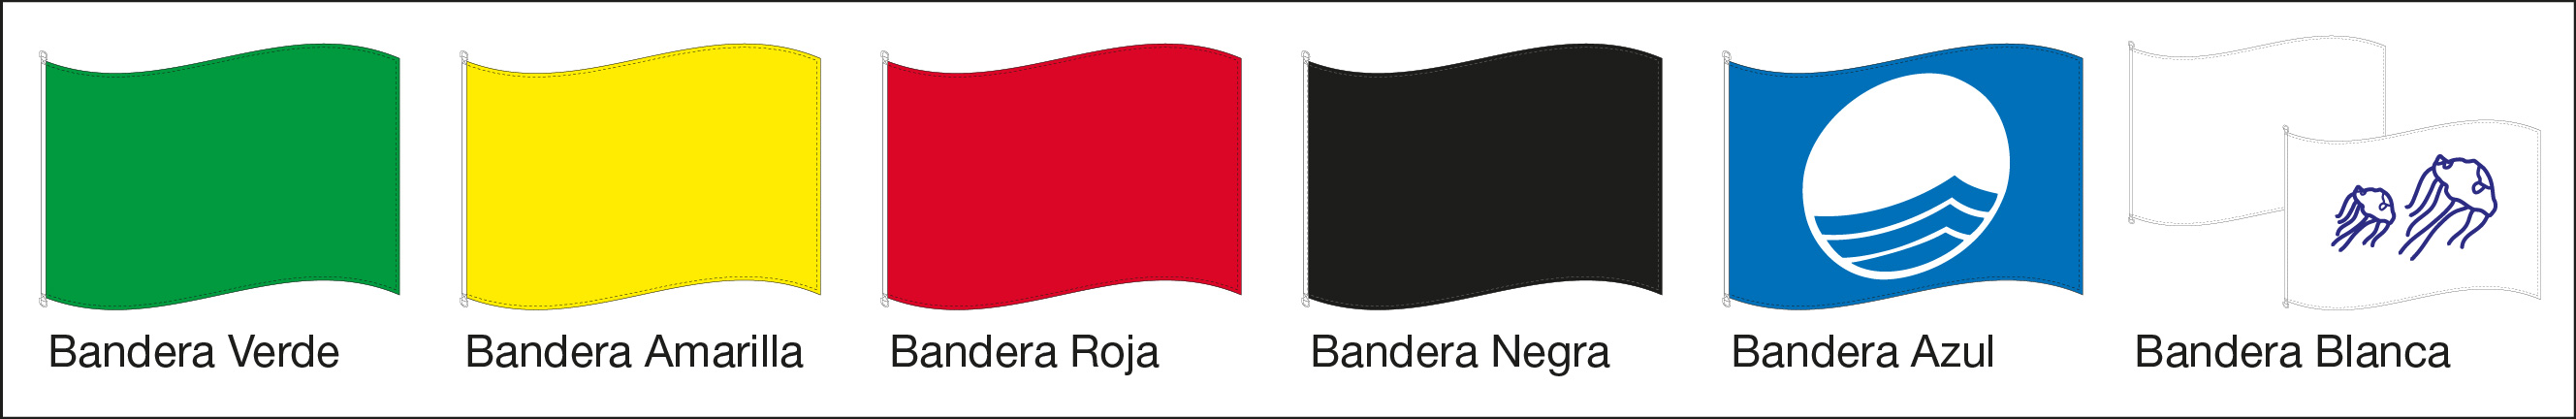 Sympton Comercial Nominal Banderas para Playas | Blog de Banderas VDK